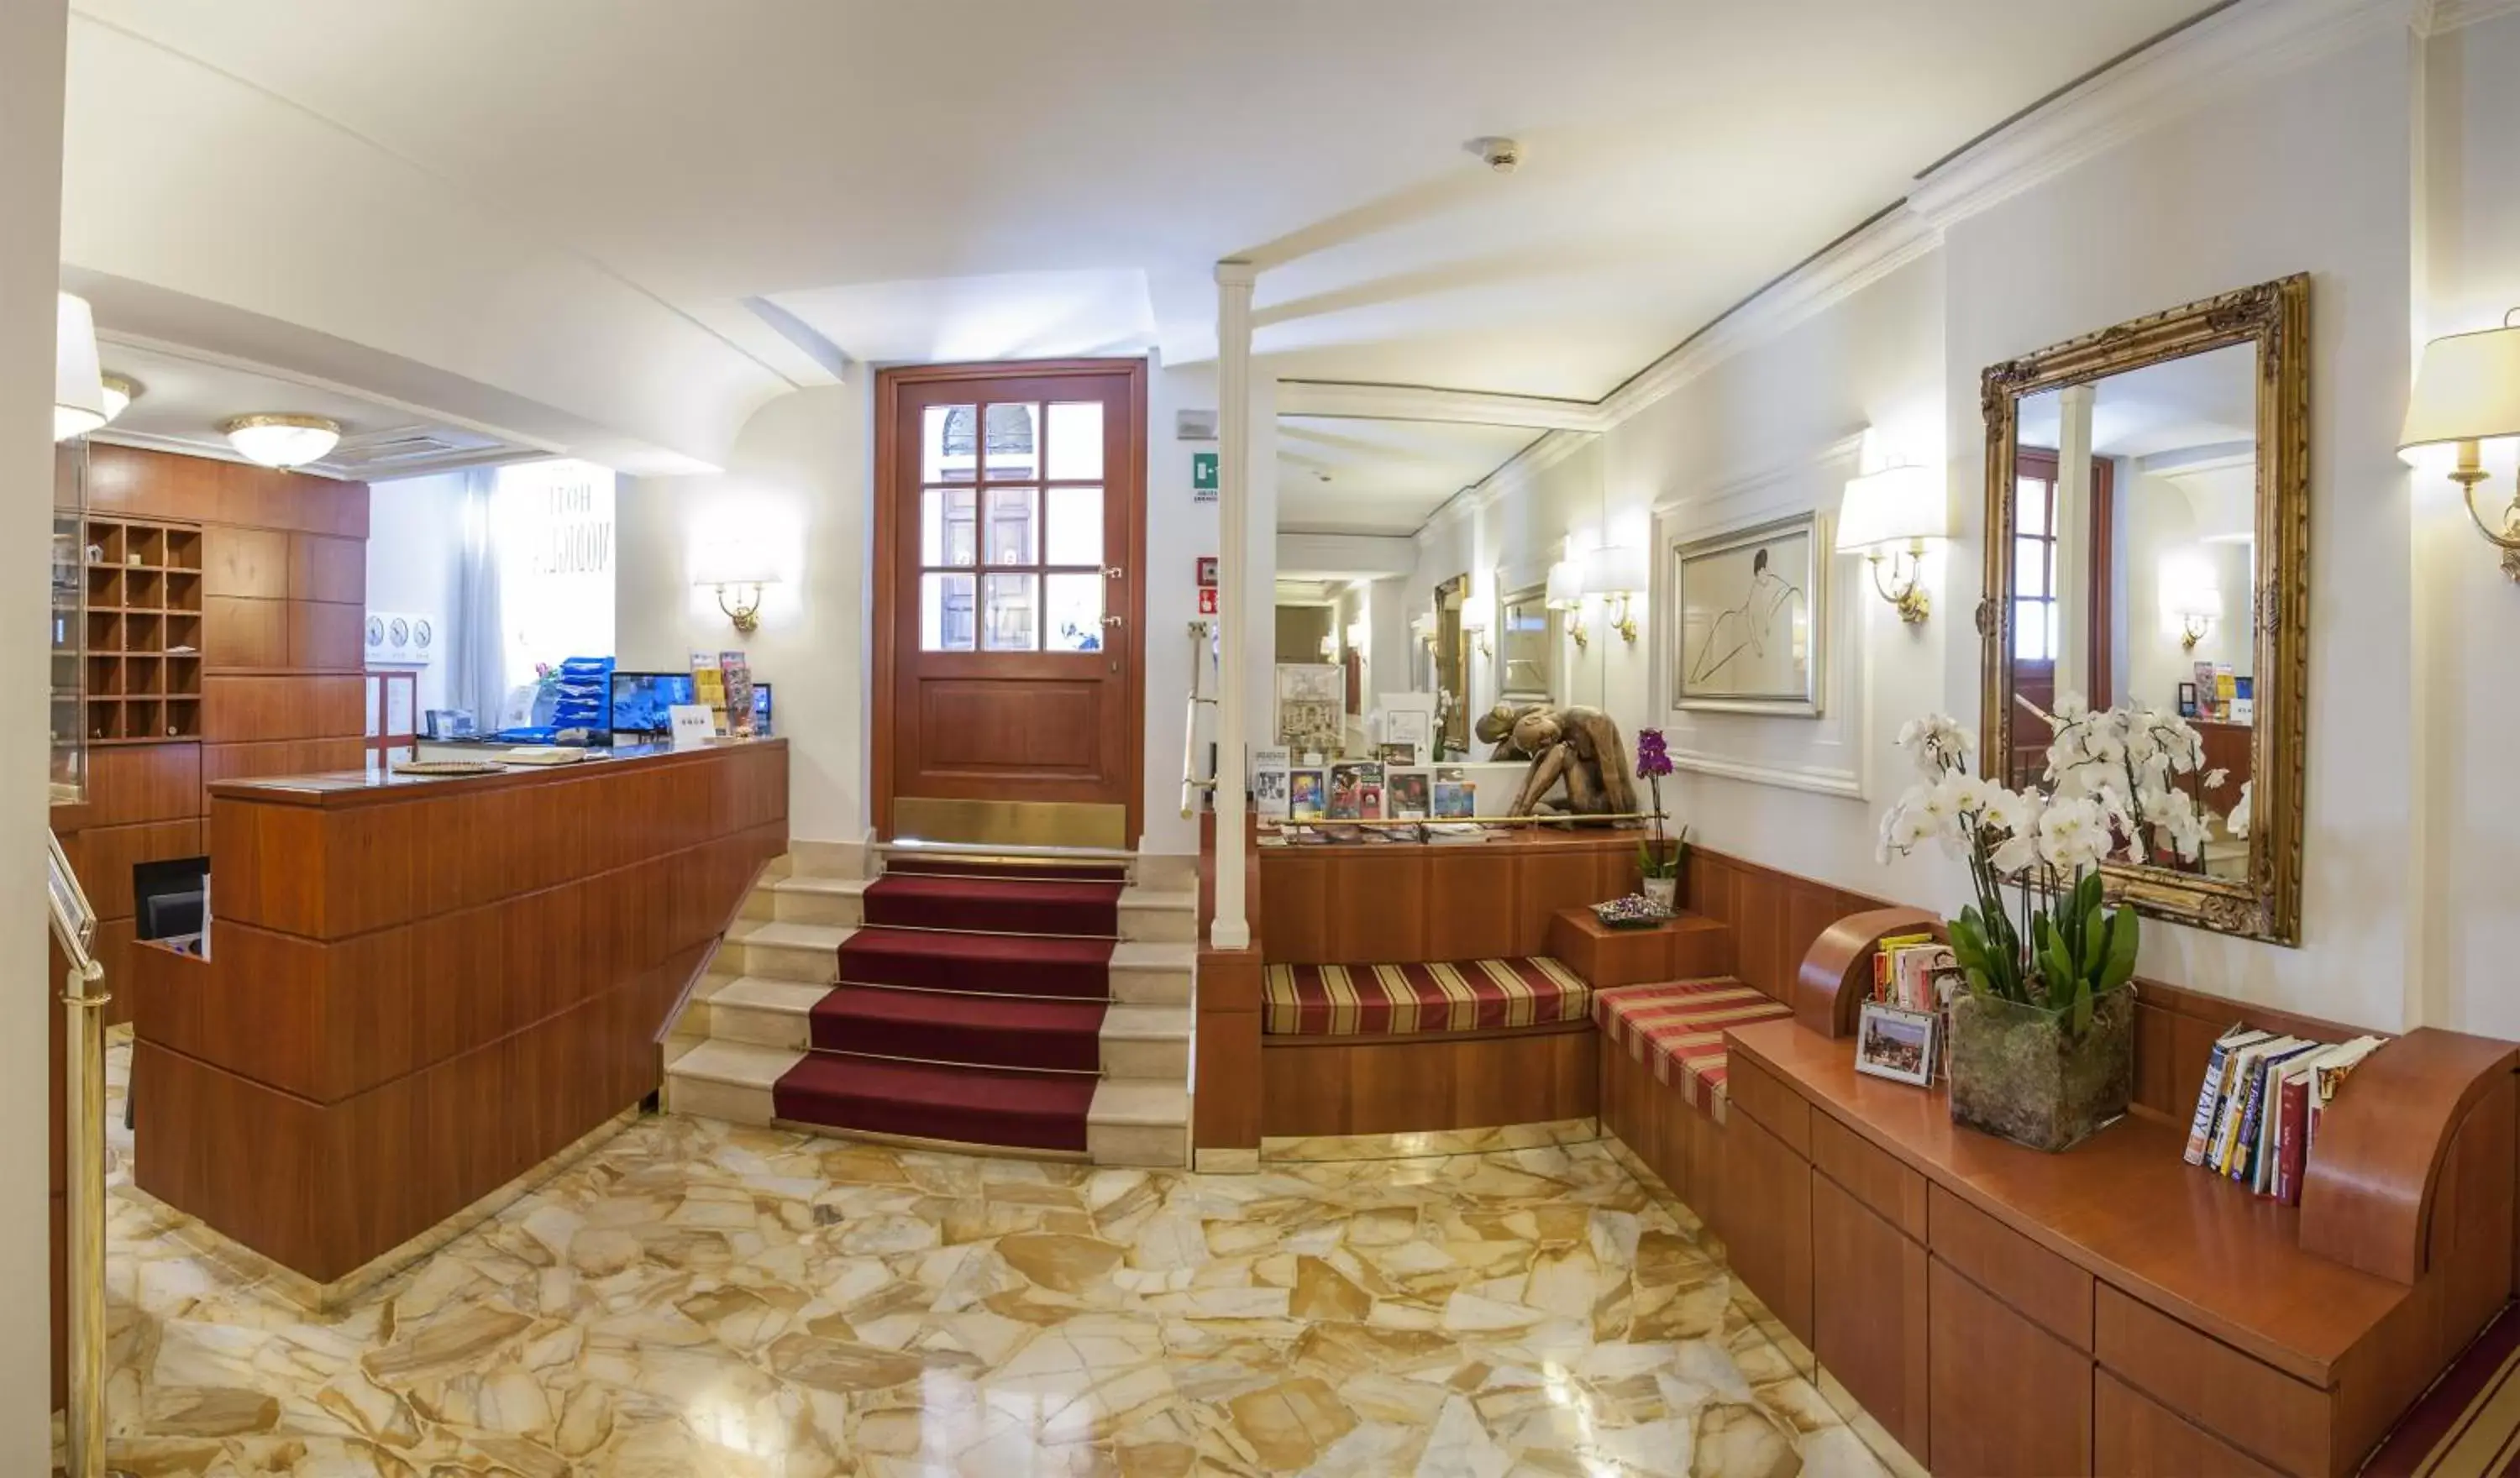 Lobby or reception, Lobby/Reception in Hotel Modigliani